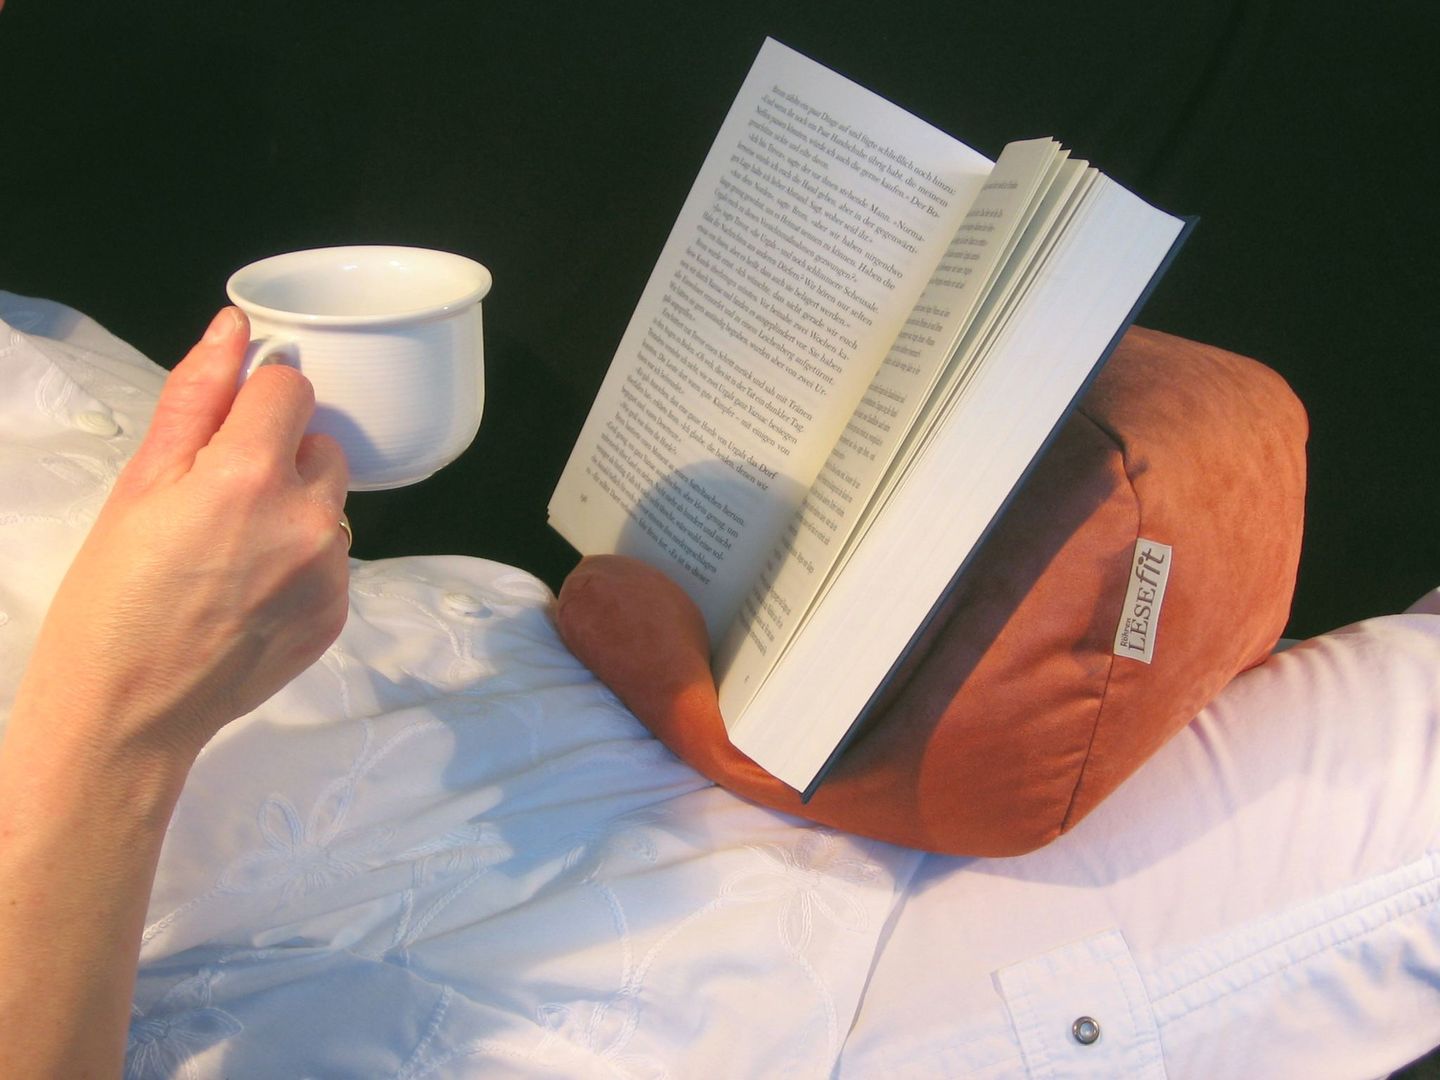 Tablet-Kissen Lesekissen - LESEfit soft, der echte Sitzsack für Buch & e-Book-Reader, antirutsch elastan-frei für Bett & Couch / terracotta, RÖHREN WOHNideen RÖHREN WOHNideen غرفة نوم ديكورات واكسسوارات